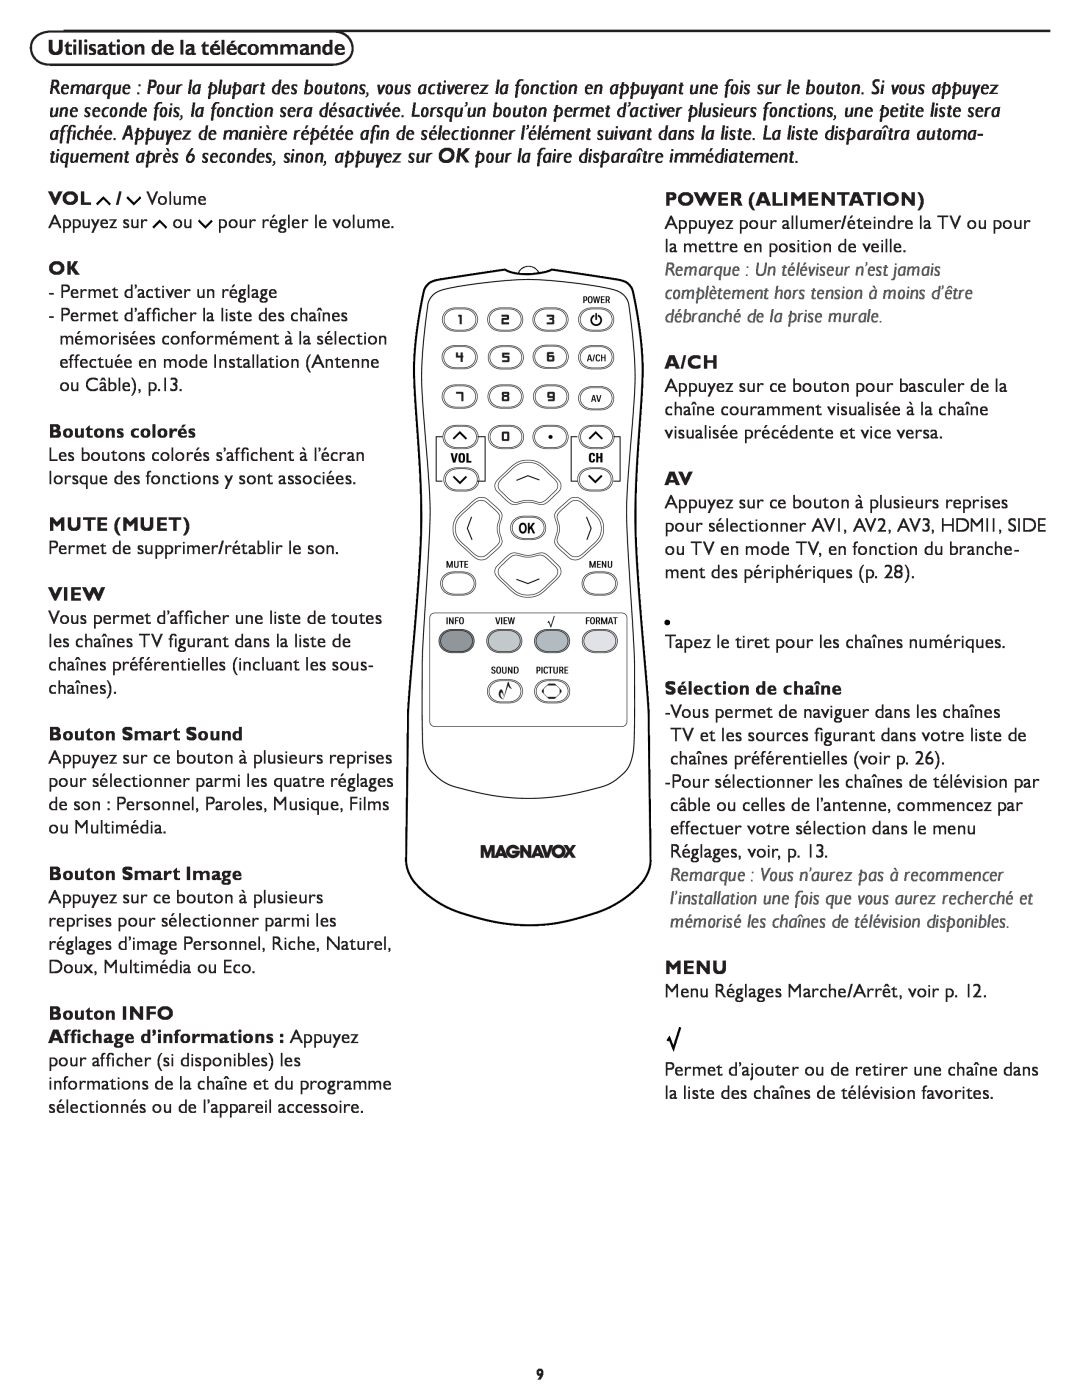 Magnavox 321D Utilisation de la télécommande, VOL / Volume, Boutons colorés, Mute Muet, View, Bouton Smart Sound, A/Ch 